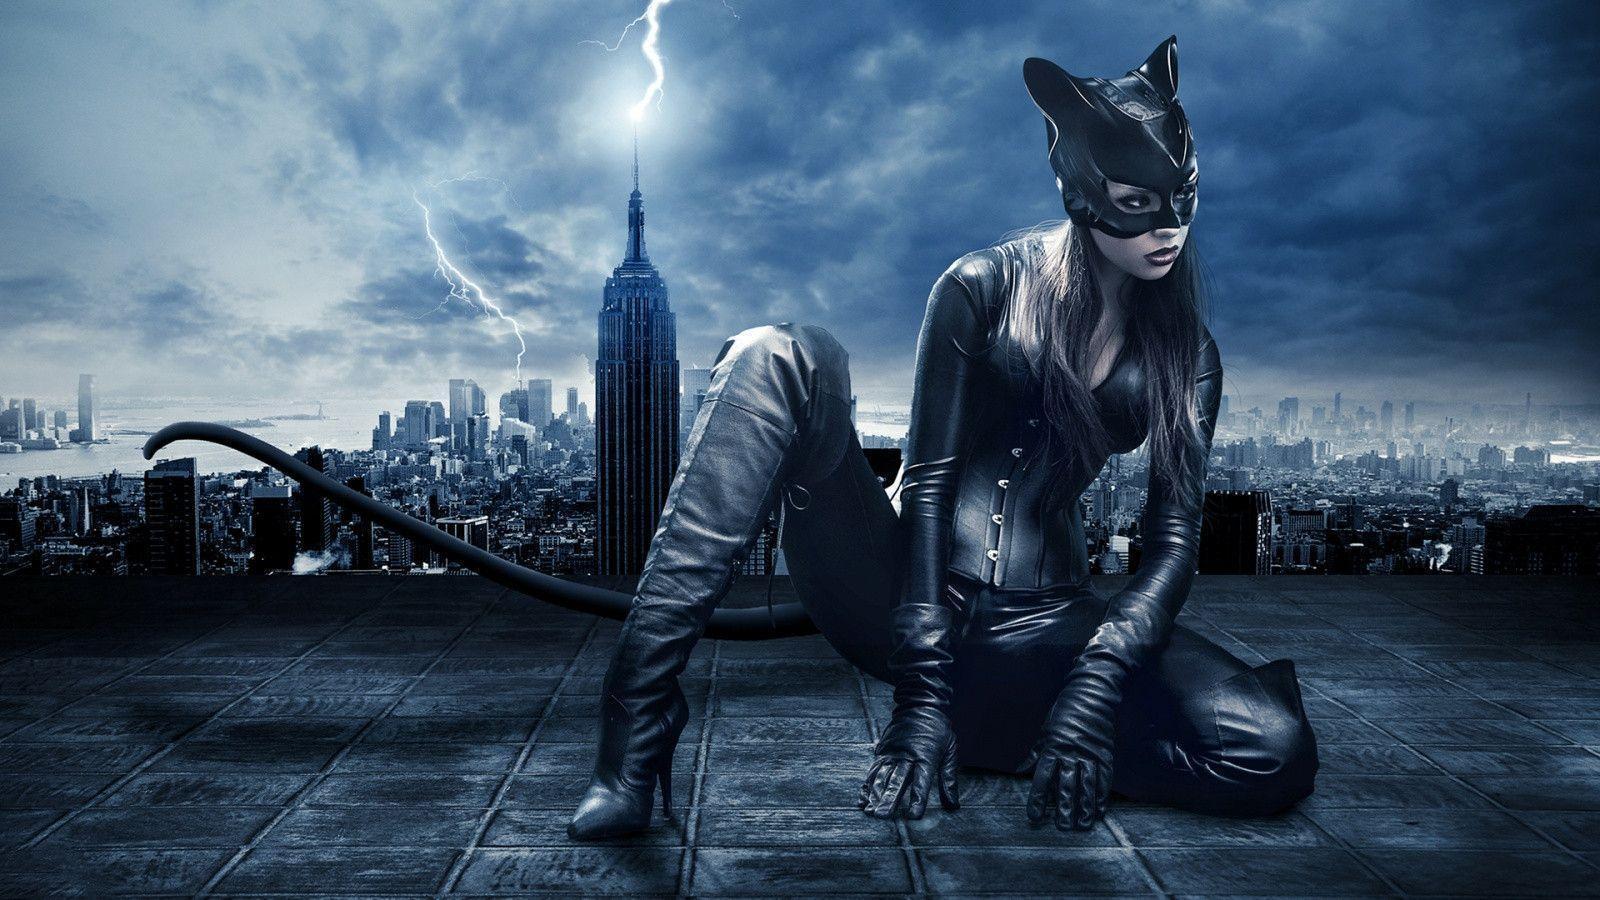 Catwoman art Wallpaper